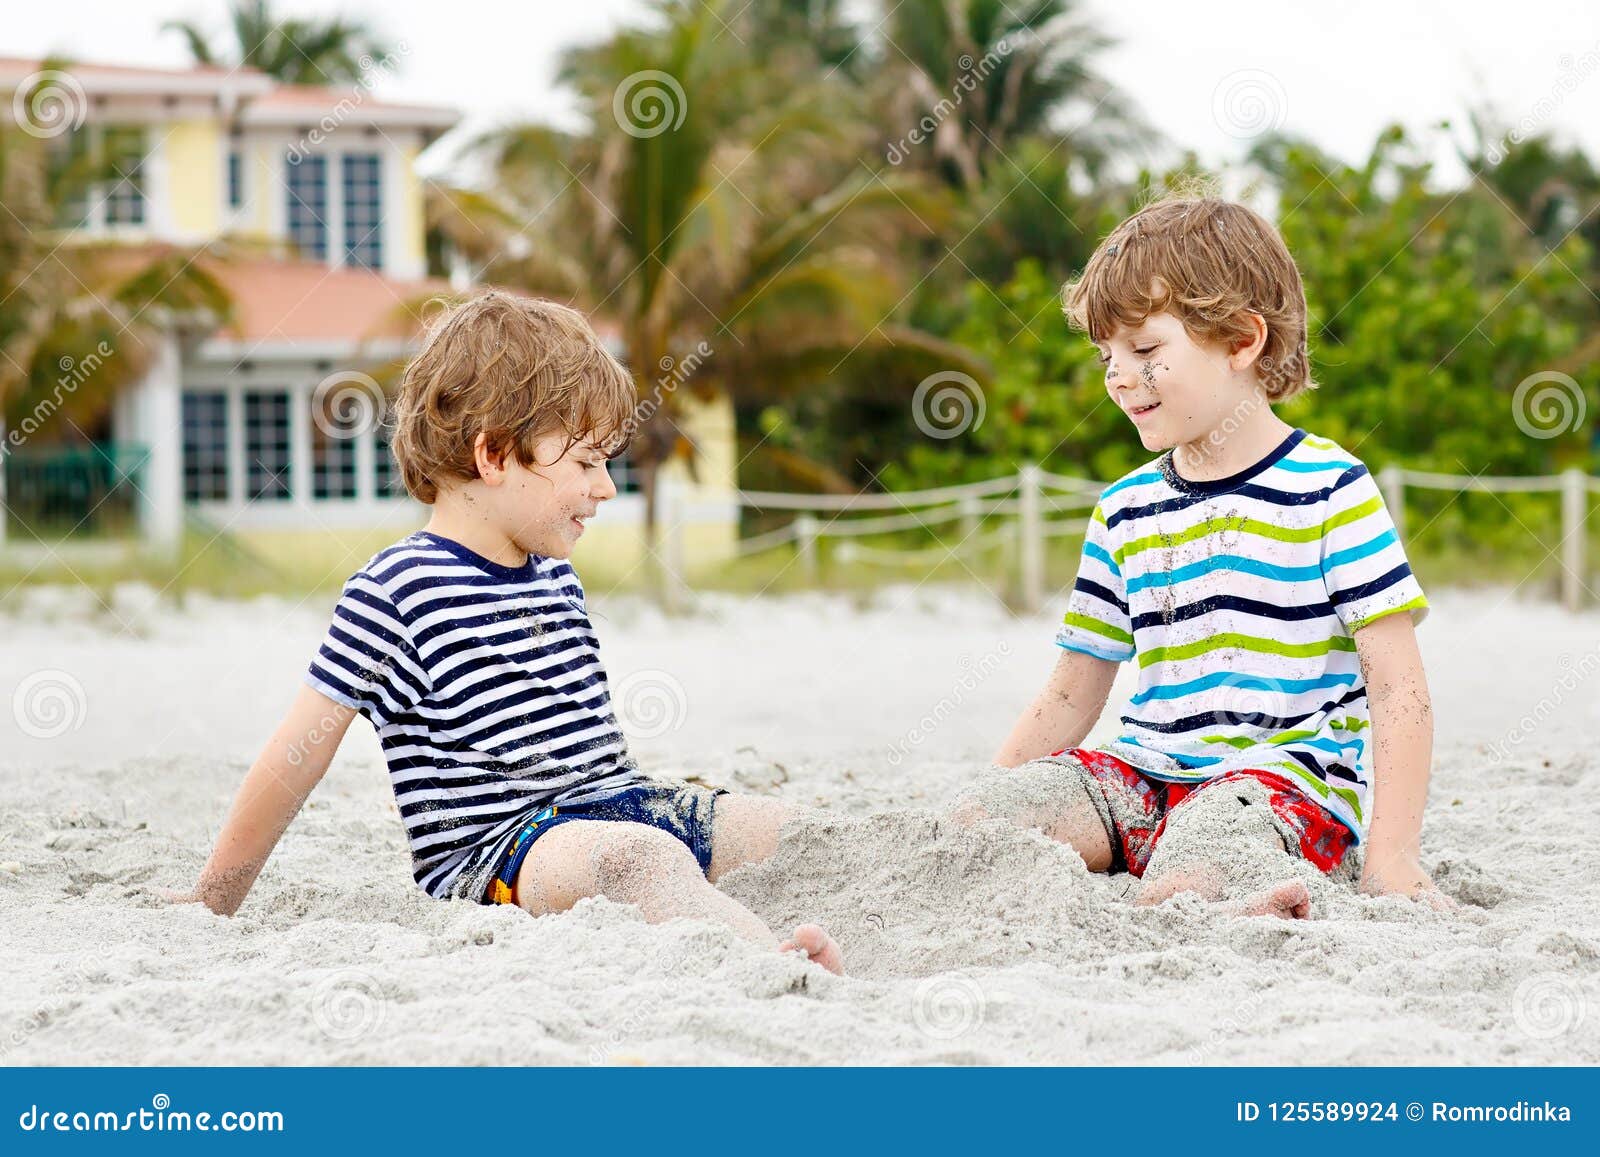 порно маленькие мальчики пляж фото 70